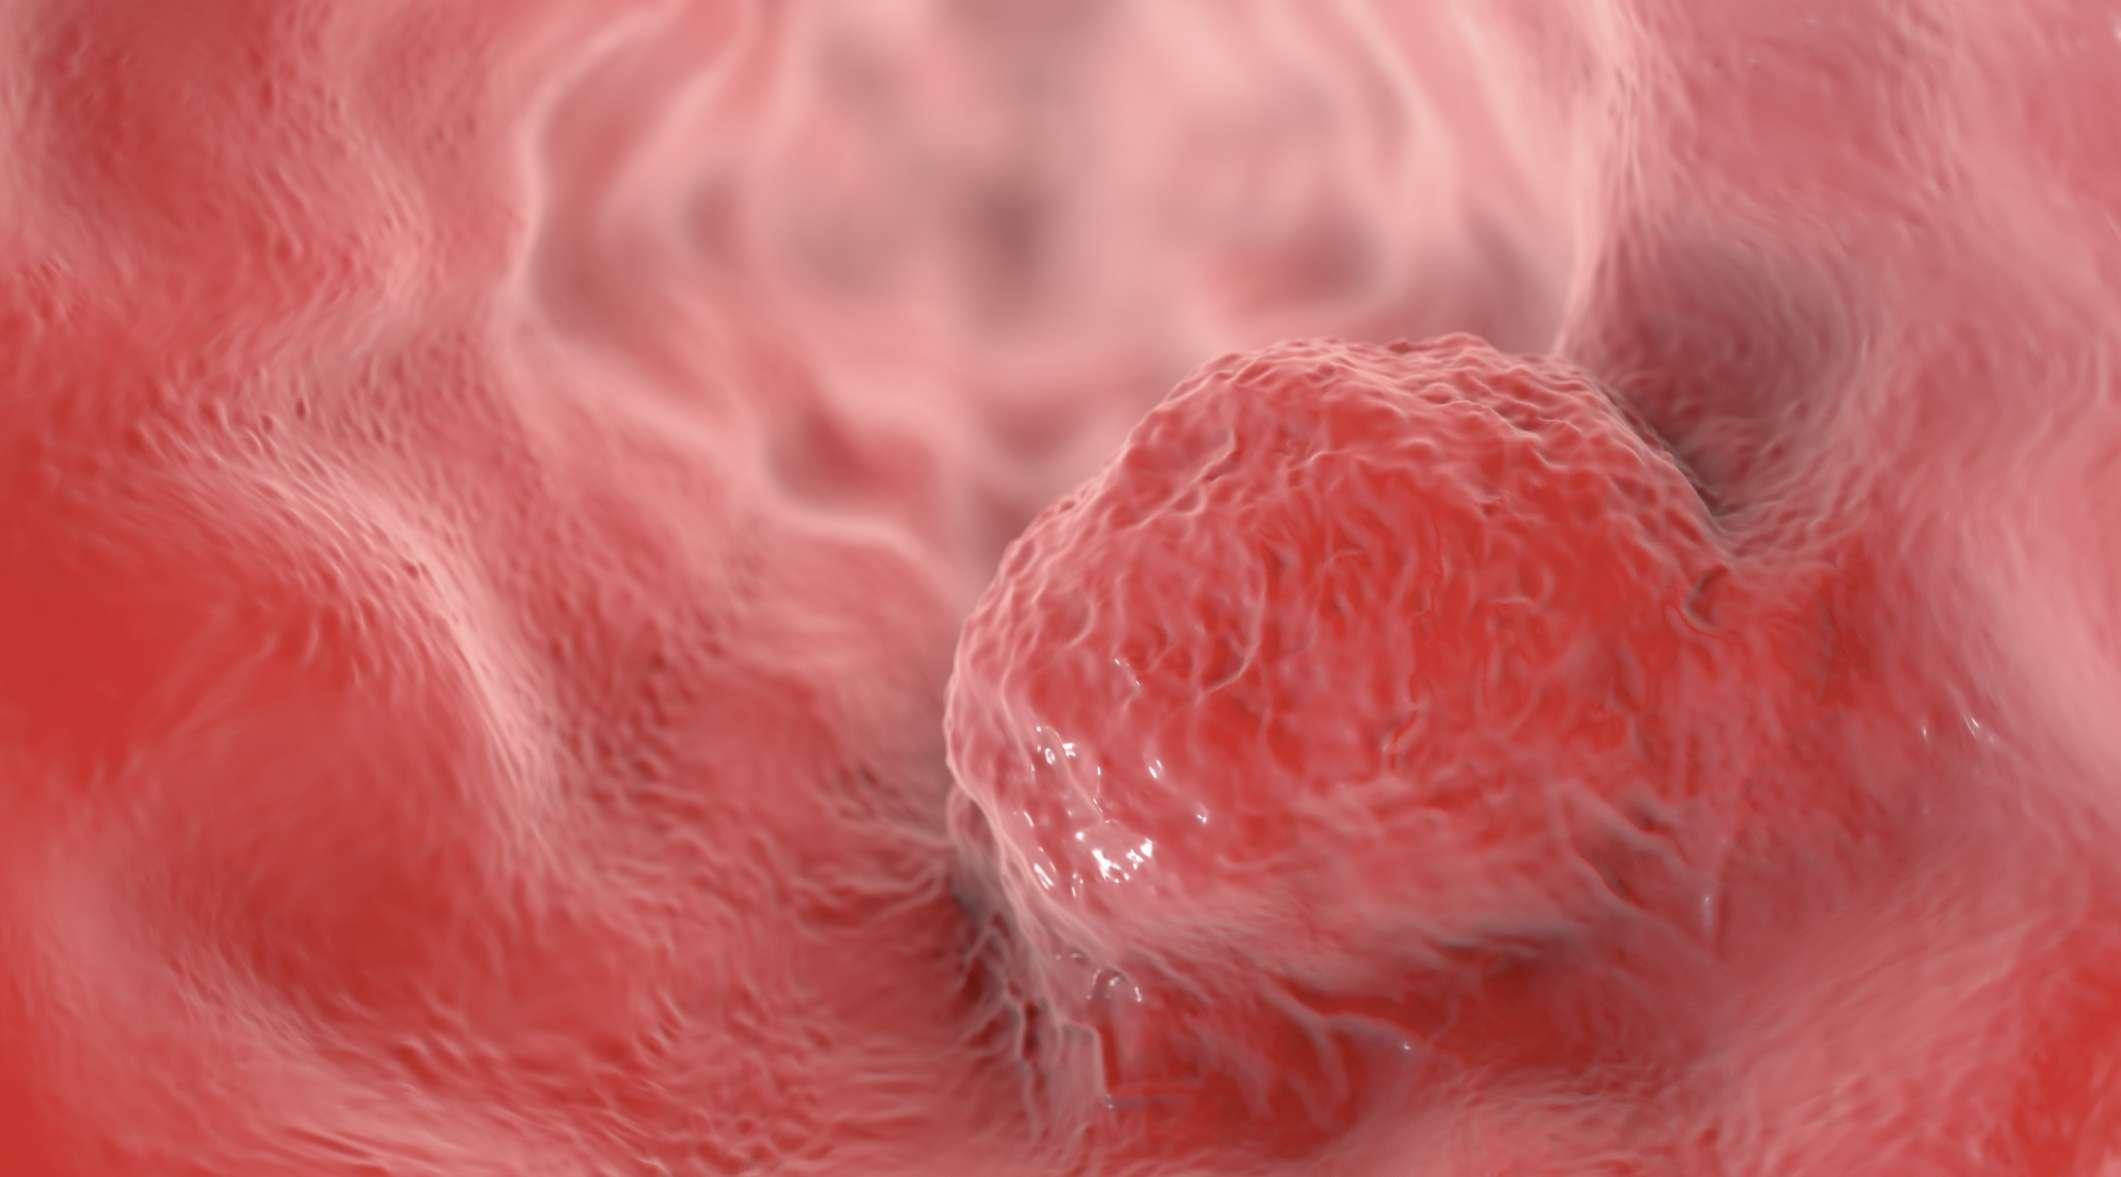 Speiseröhrenkrebs, 3D-Darstellung, die einen Tumor an der Wand der Speiseröhre zeigt